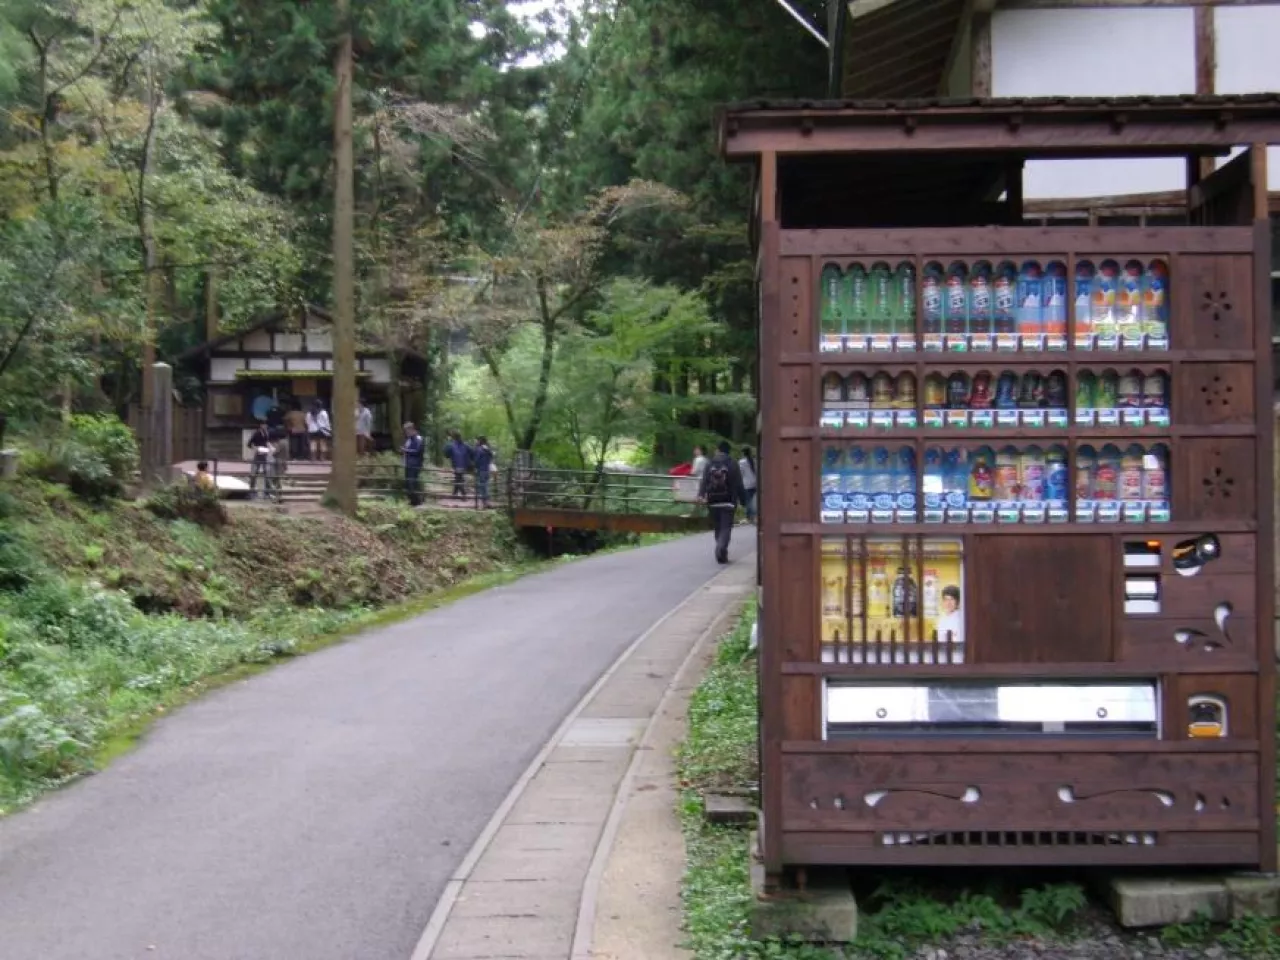 Maszyna vendingowa w Japonii (fot. Wikimedia Commons)